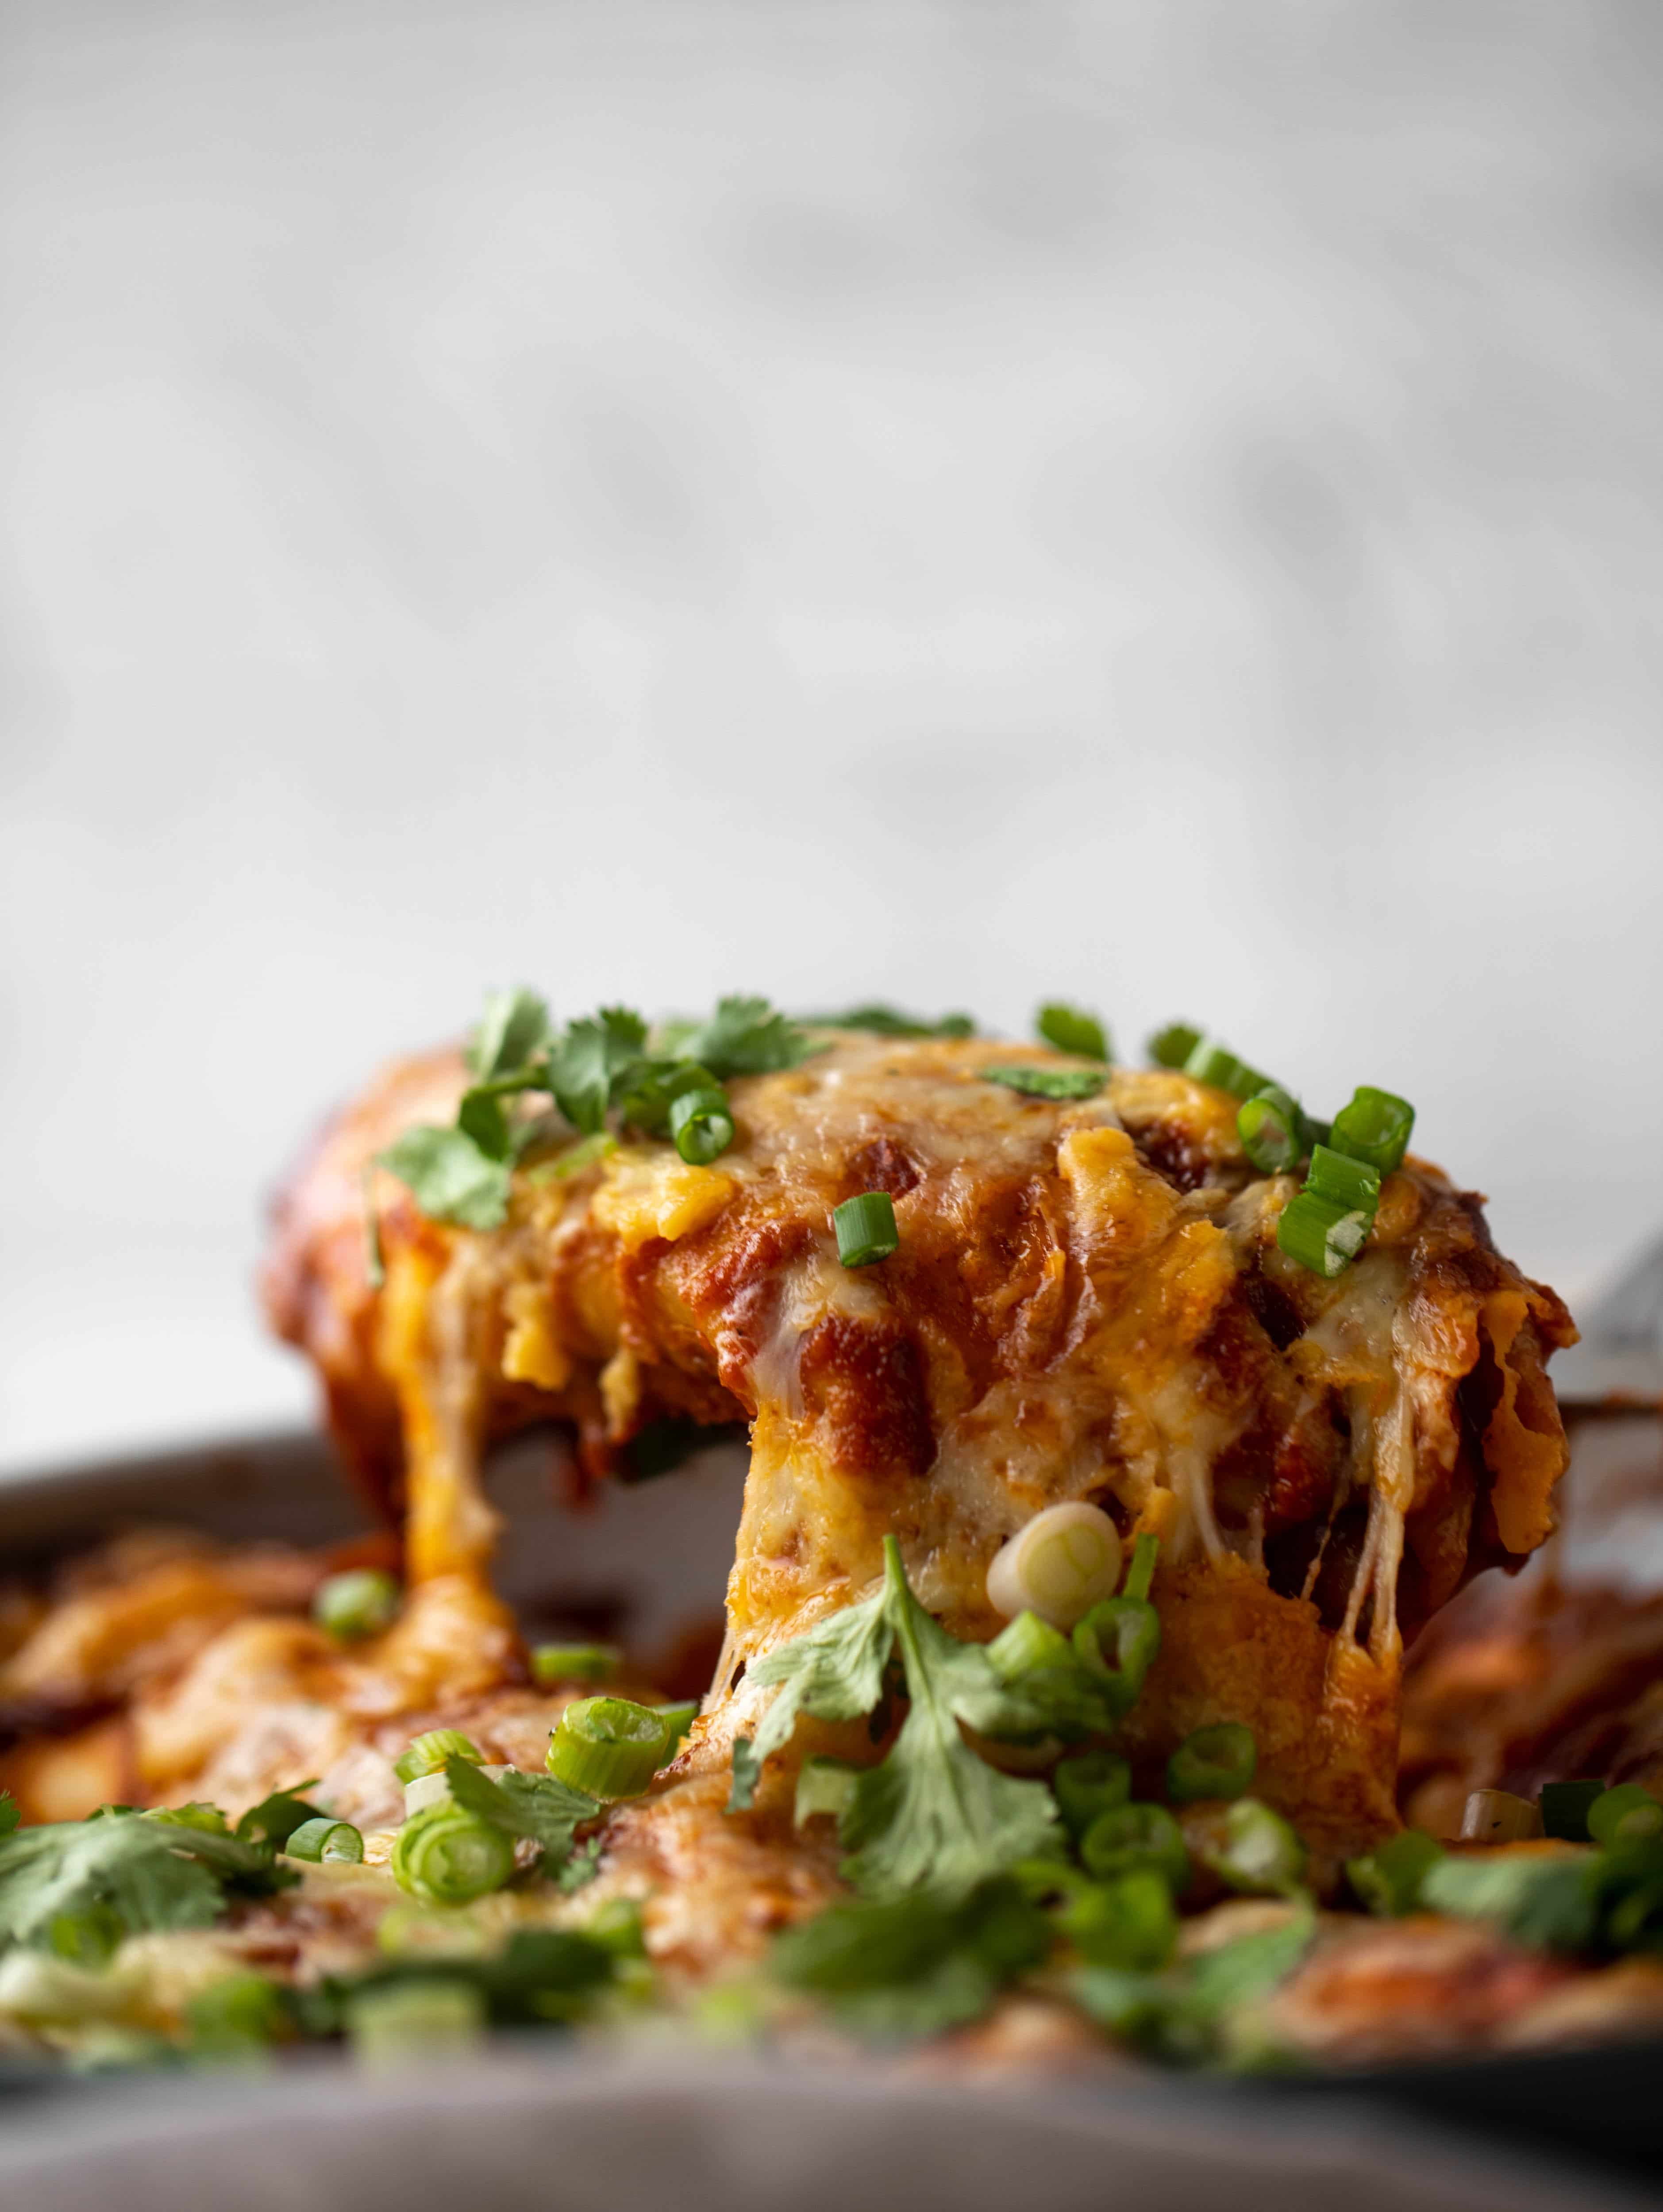  Chipotle Chicken Skillet Enchiladas sind voller Geschmack und kommen so schnell zusammen! Sie sind die perfekte würzige Mahlzeit unter der Woche.